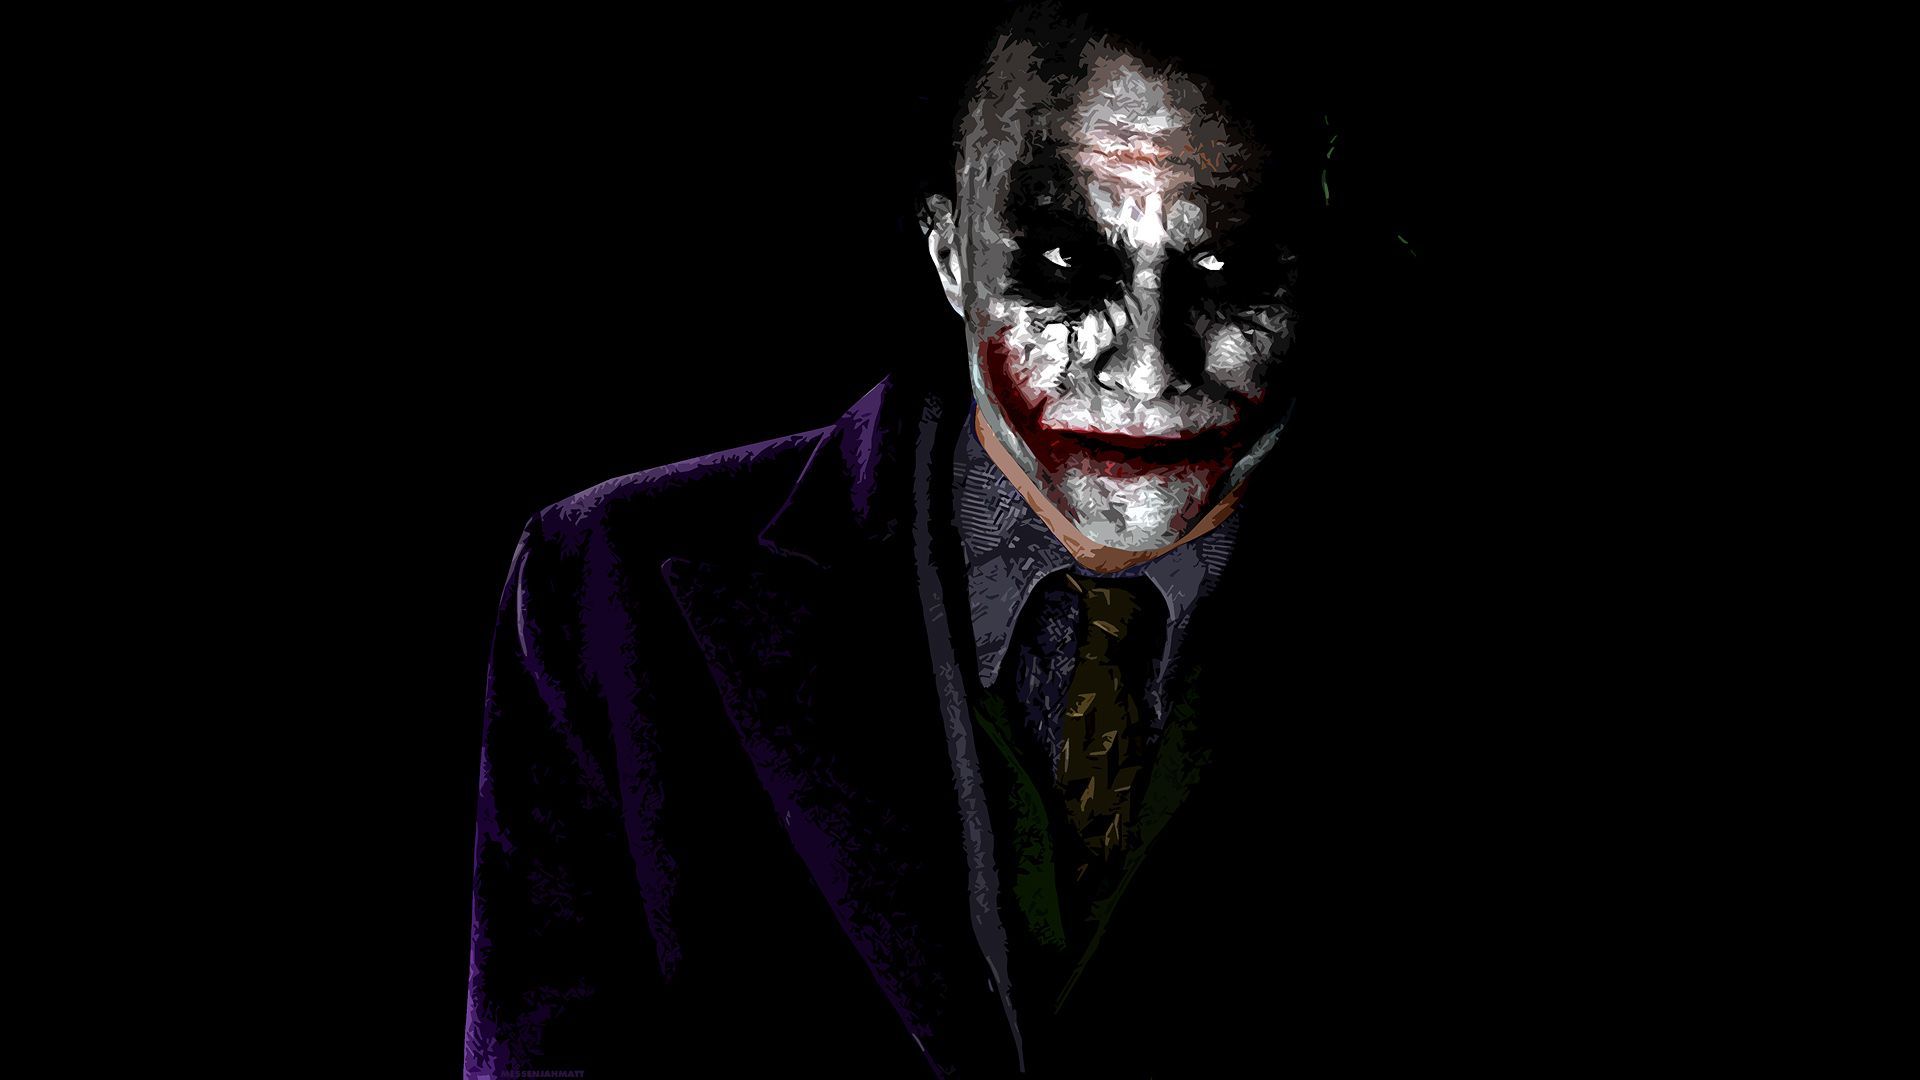 Scary Joker Wallpaper Free Scary Joker Background